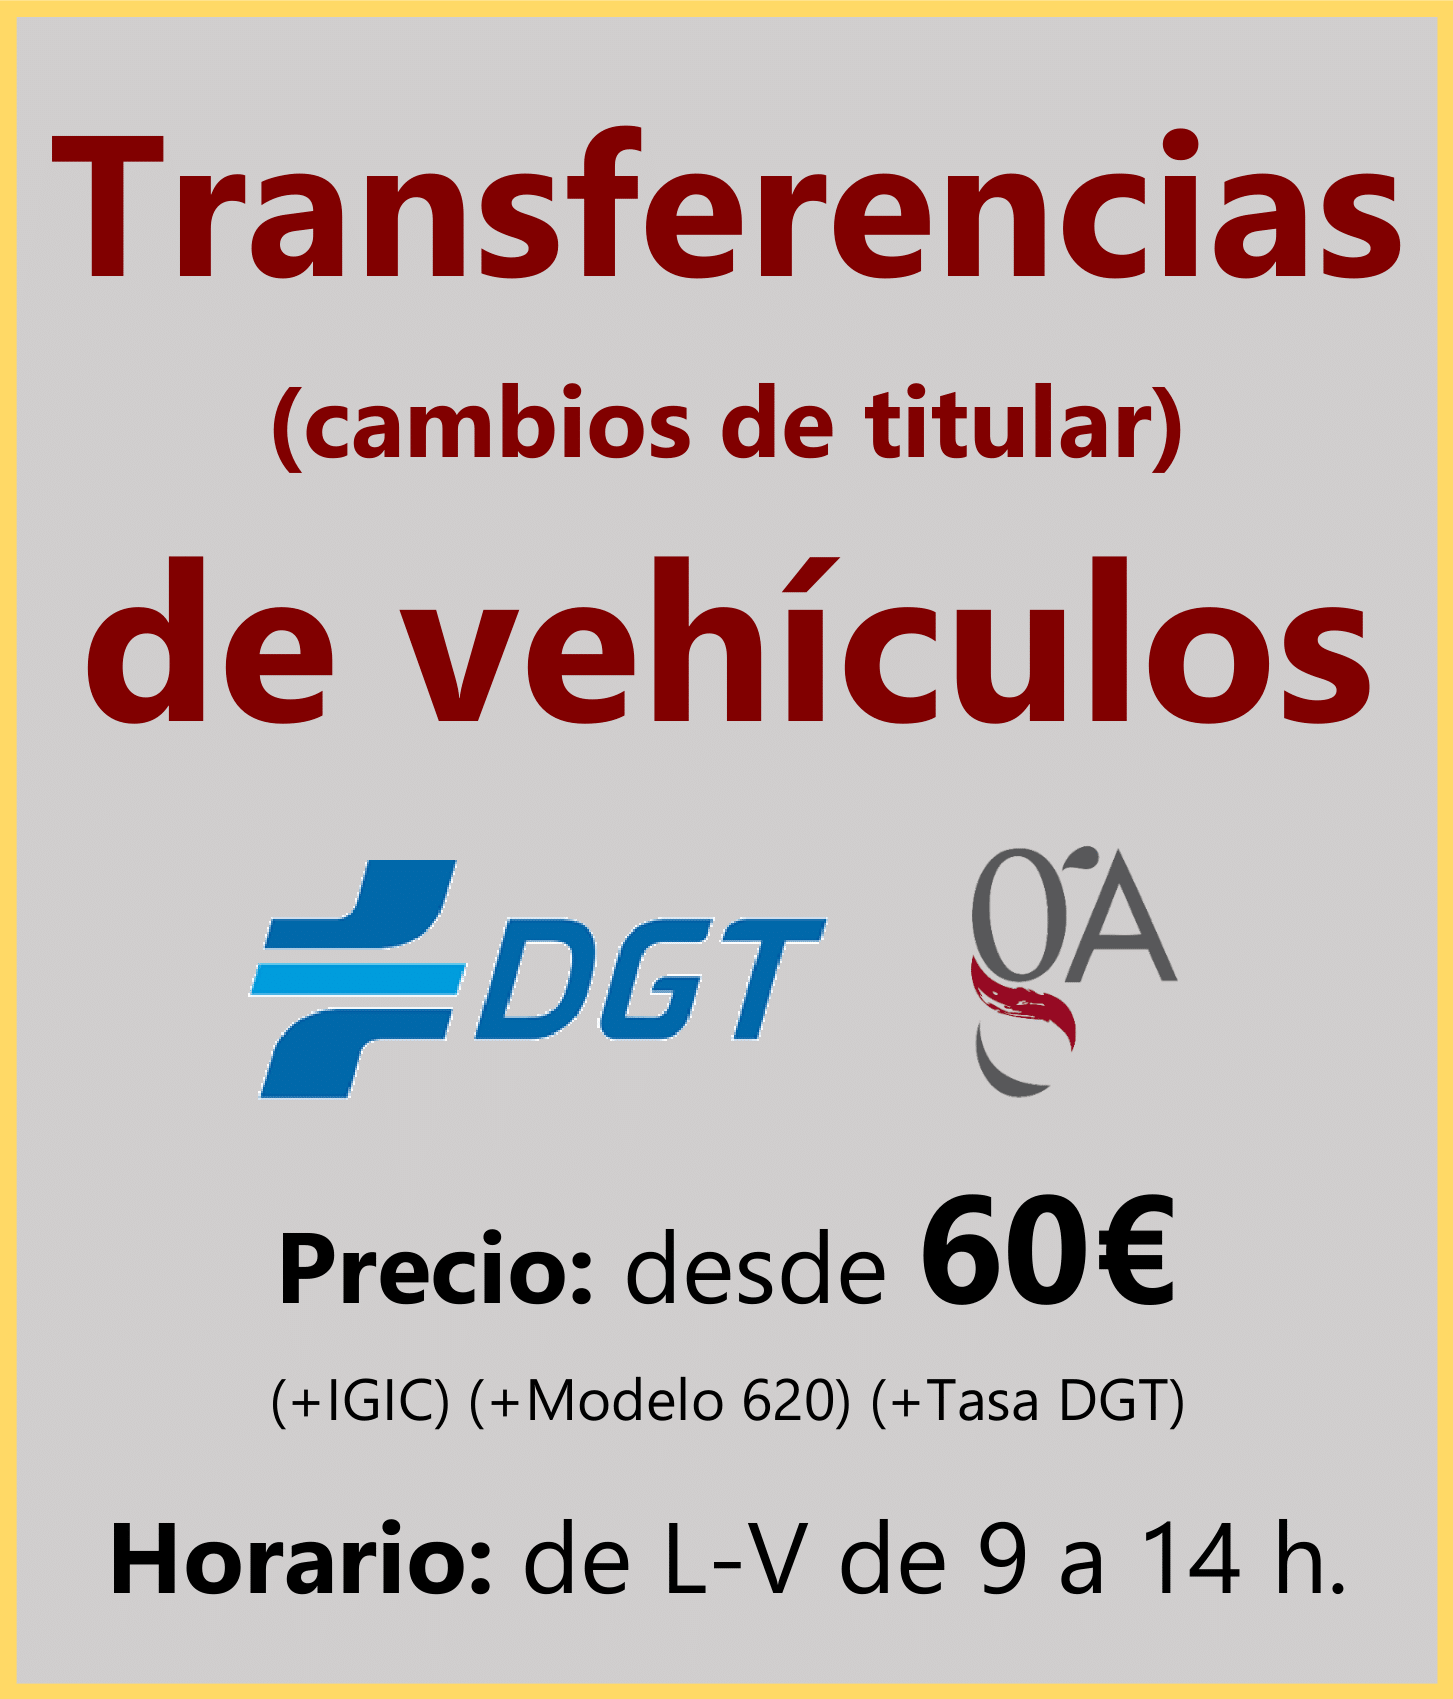 Transferencias de vehículos (cambios de titular) en la DGT desde 40 €.